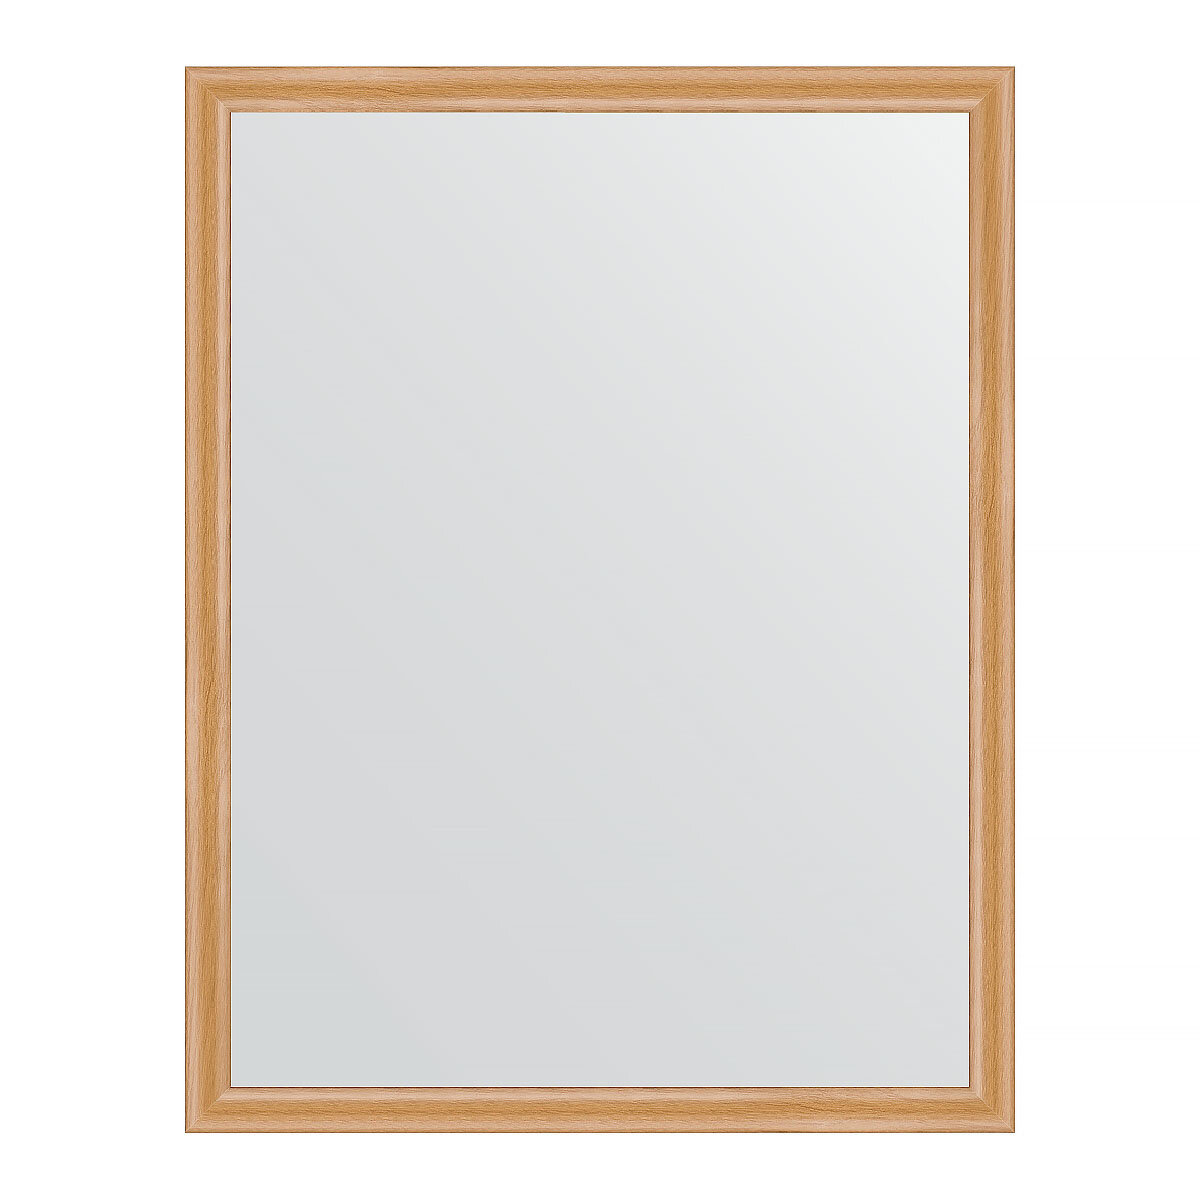 Зеркало настенное EVOFORM в багетной раме клён, 70х90 см, для гостиной, прихожей, кабинета, спальни и ванной комнаты, BY 0681